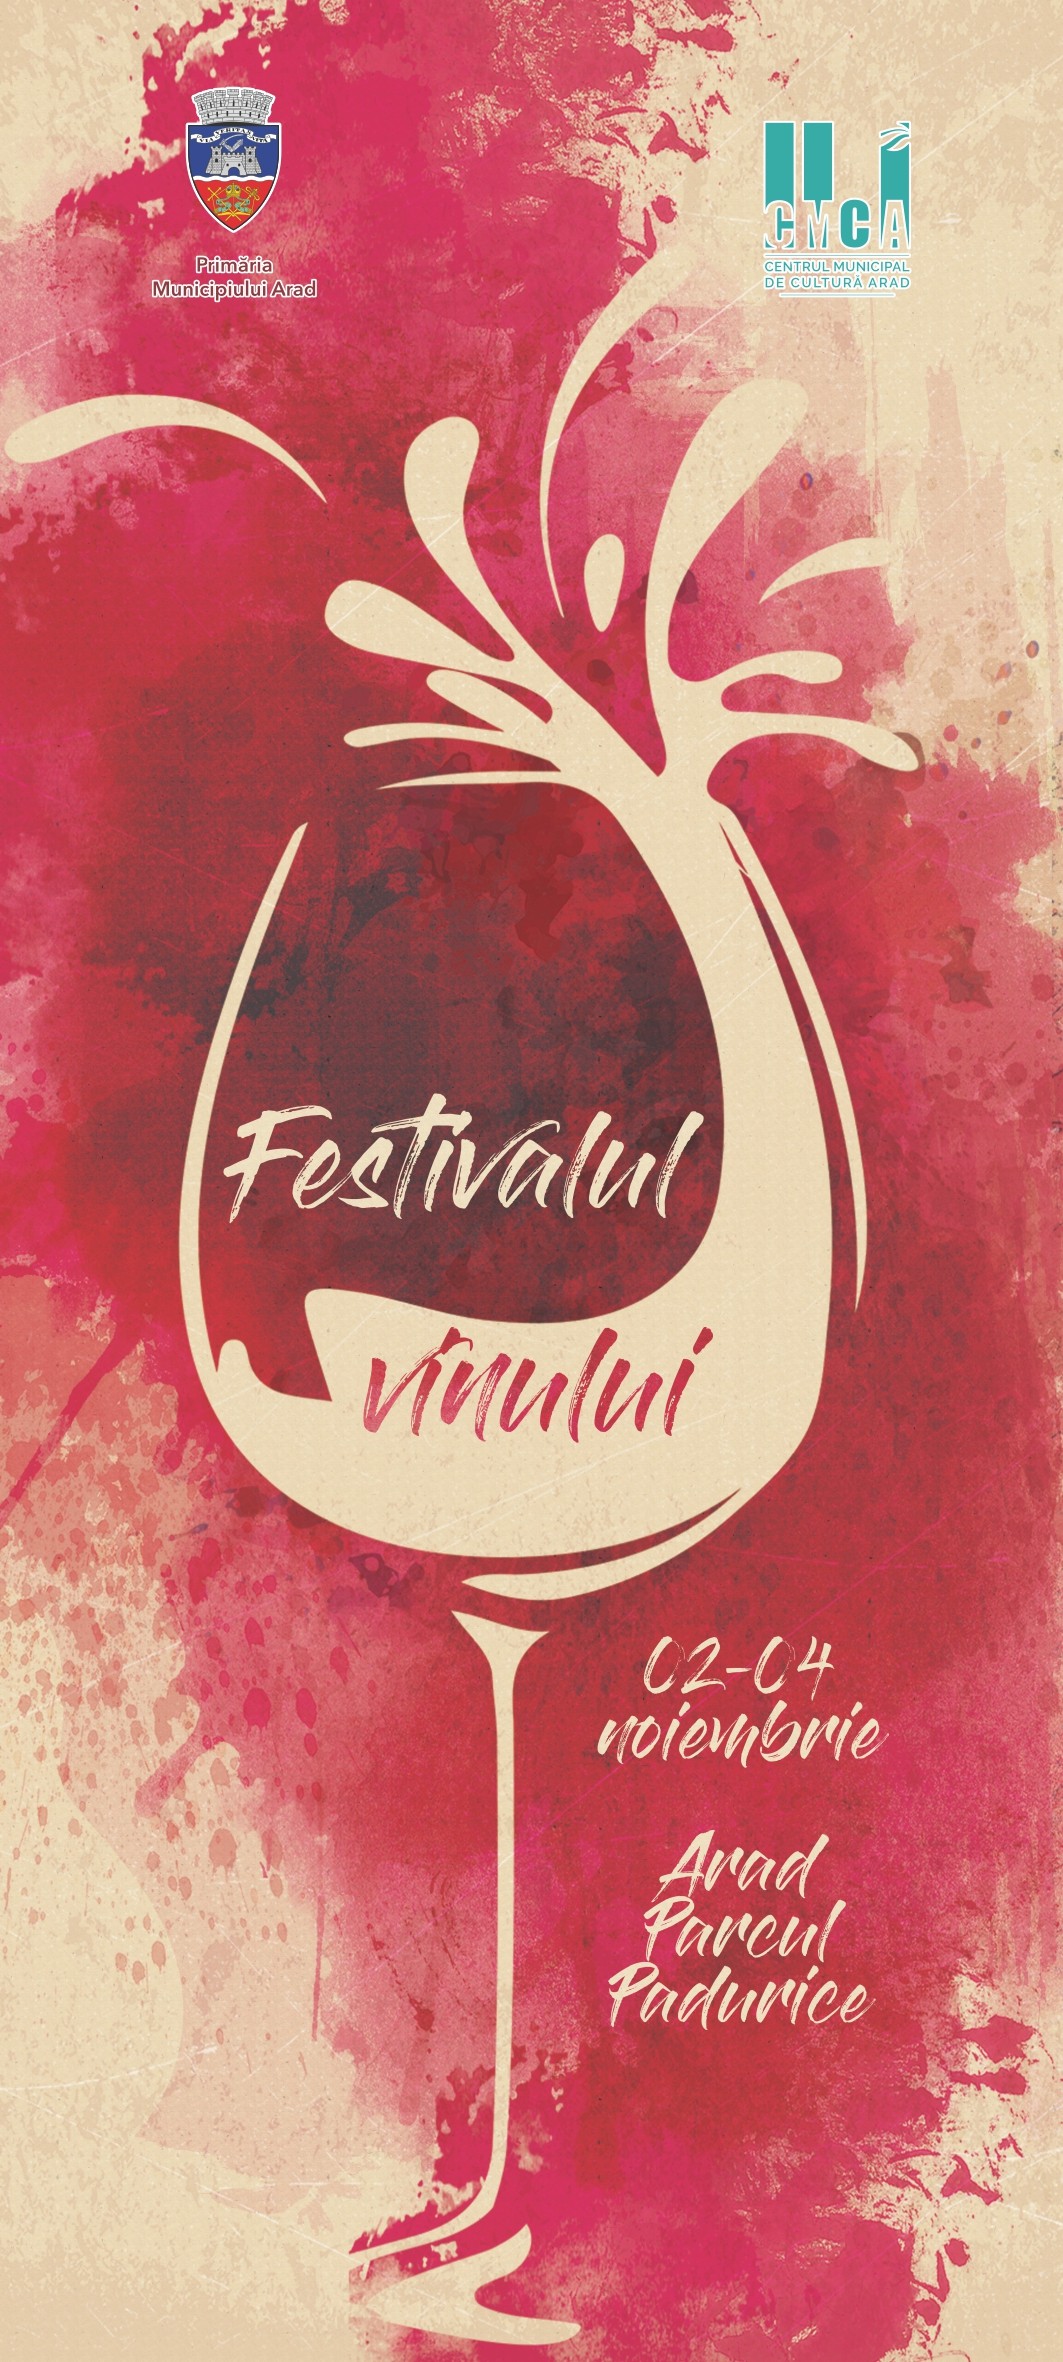 O nouă ediție a Festivalului Vinului, la Arad